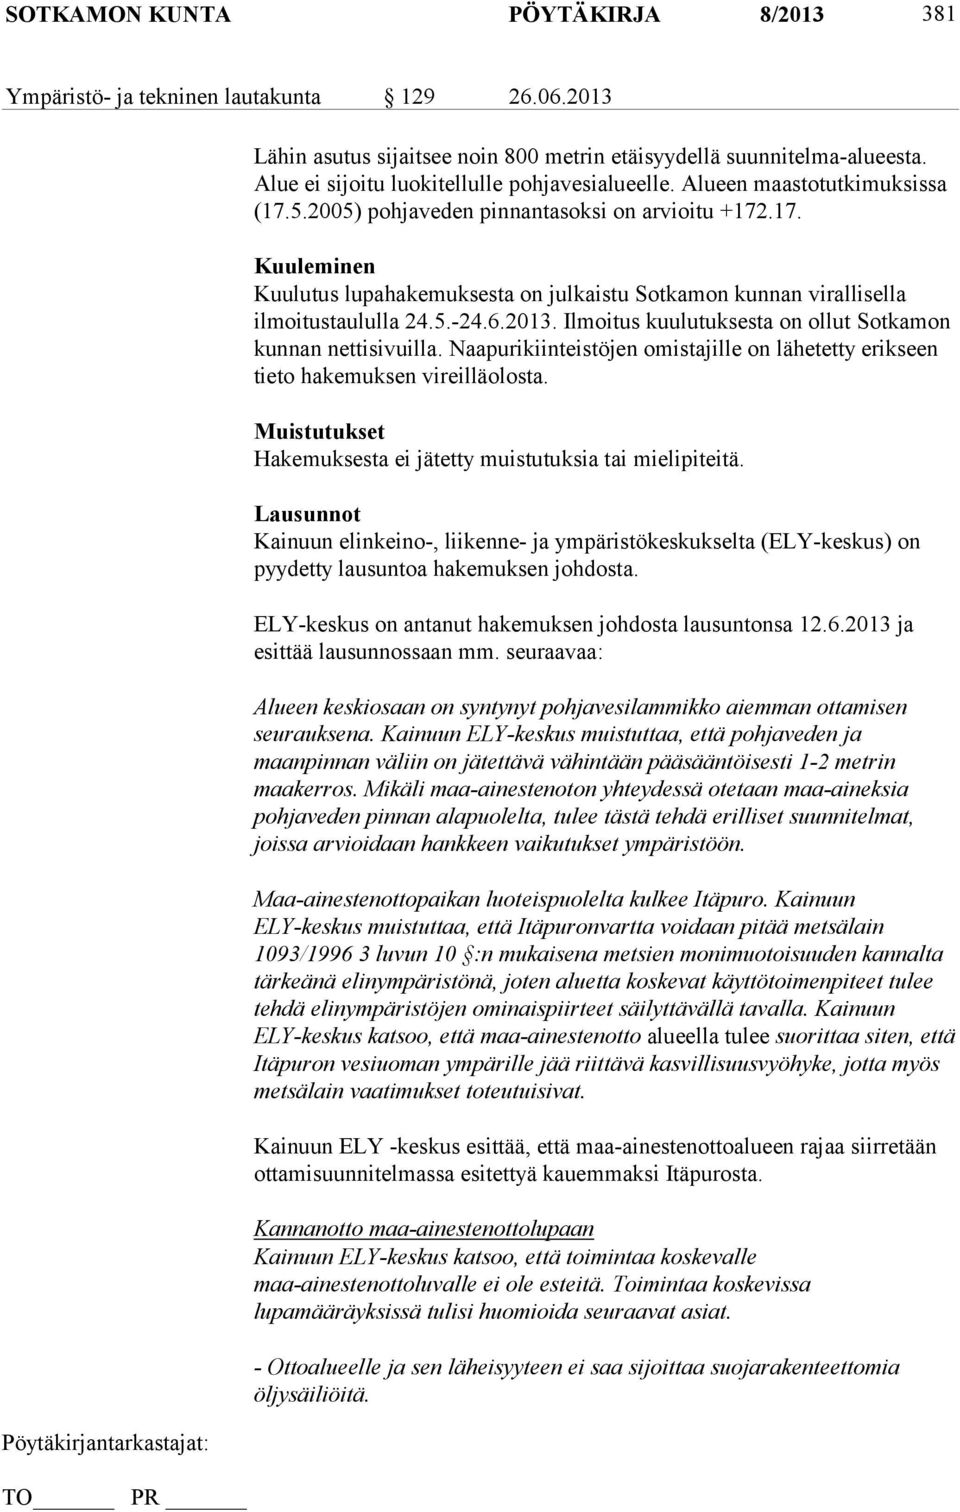 5.-24.6.2013. Ilmoitus kuulutuksesta on ollut Sotkamon kunnan nettisivuilla. Naapurikiinteistöjen omistajille on lähetetty erikseen tieto hakemuksen vireilläolosta.